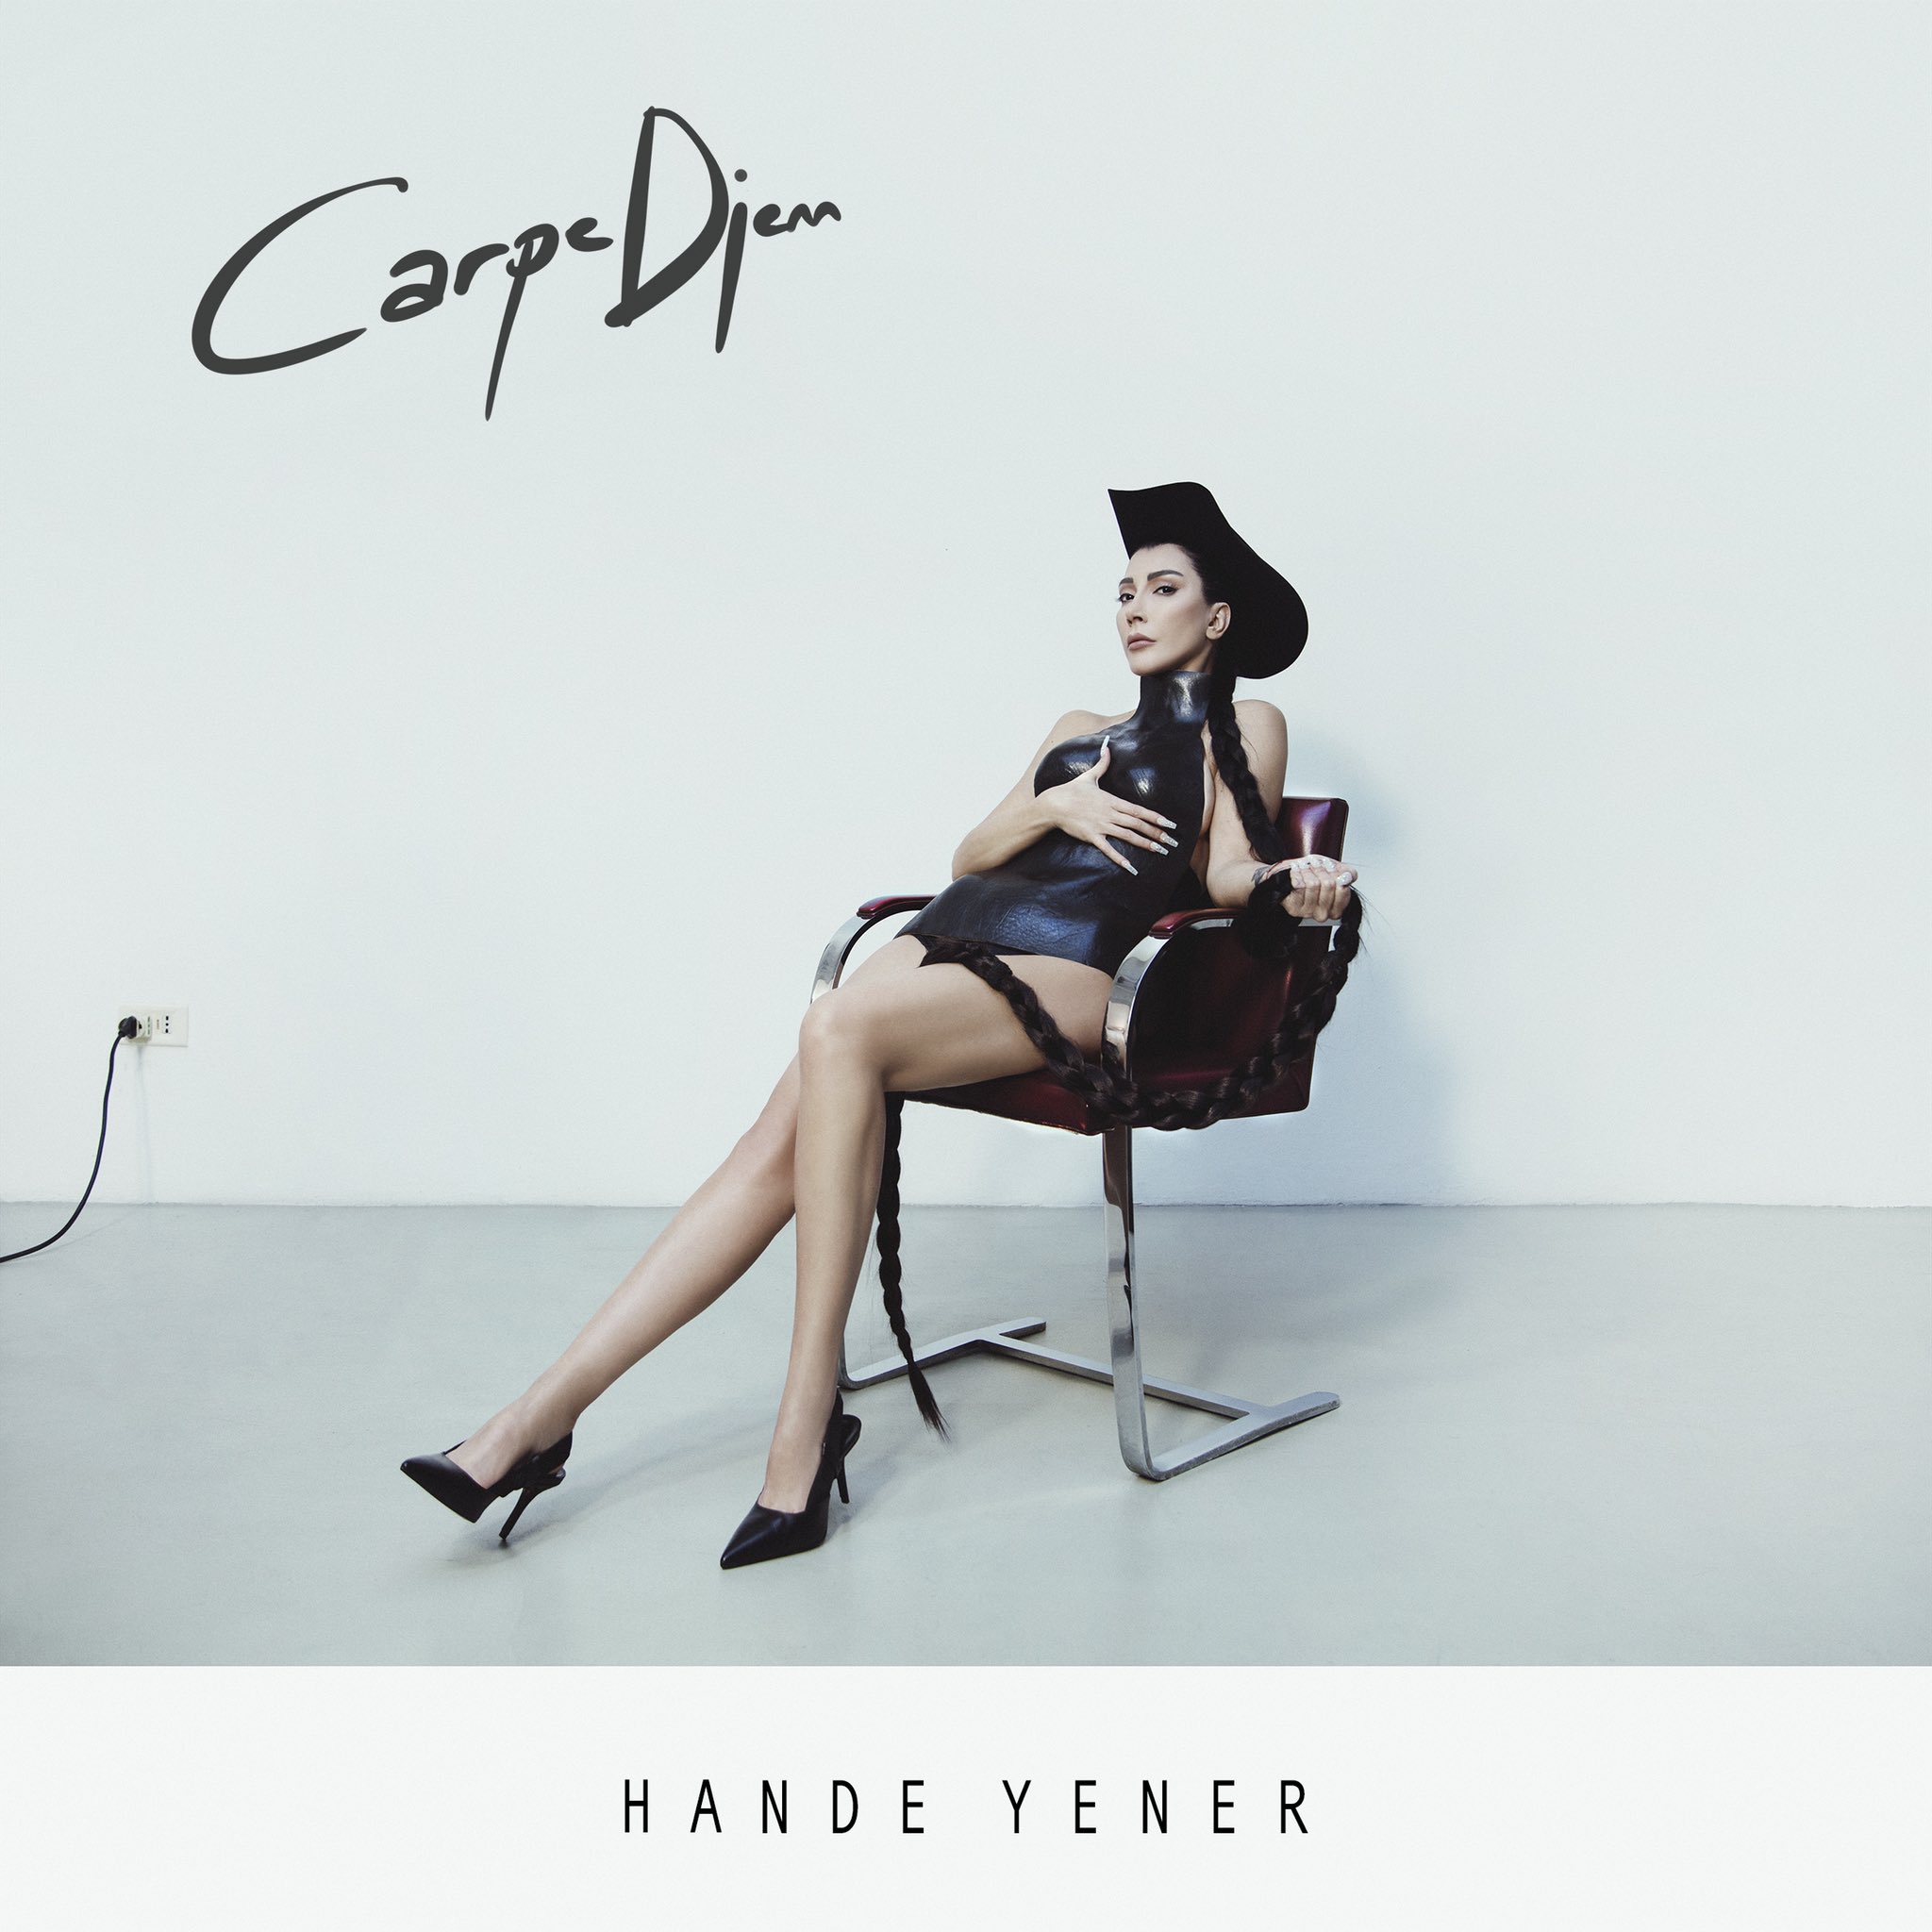 Hande Yener’den 20. Yıla Özel Albüm “Carpe Diem”